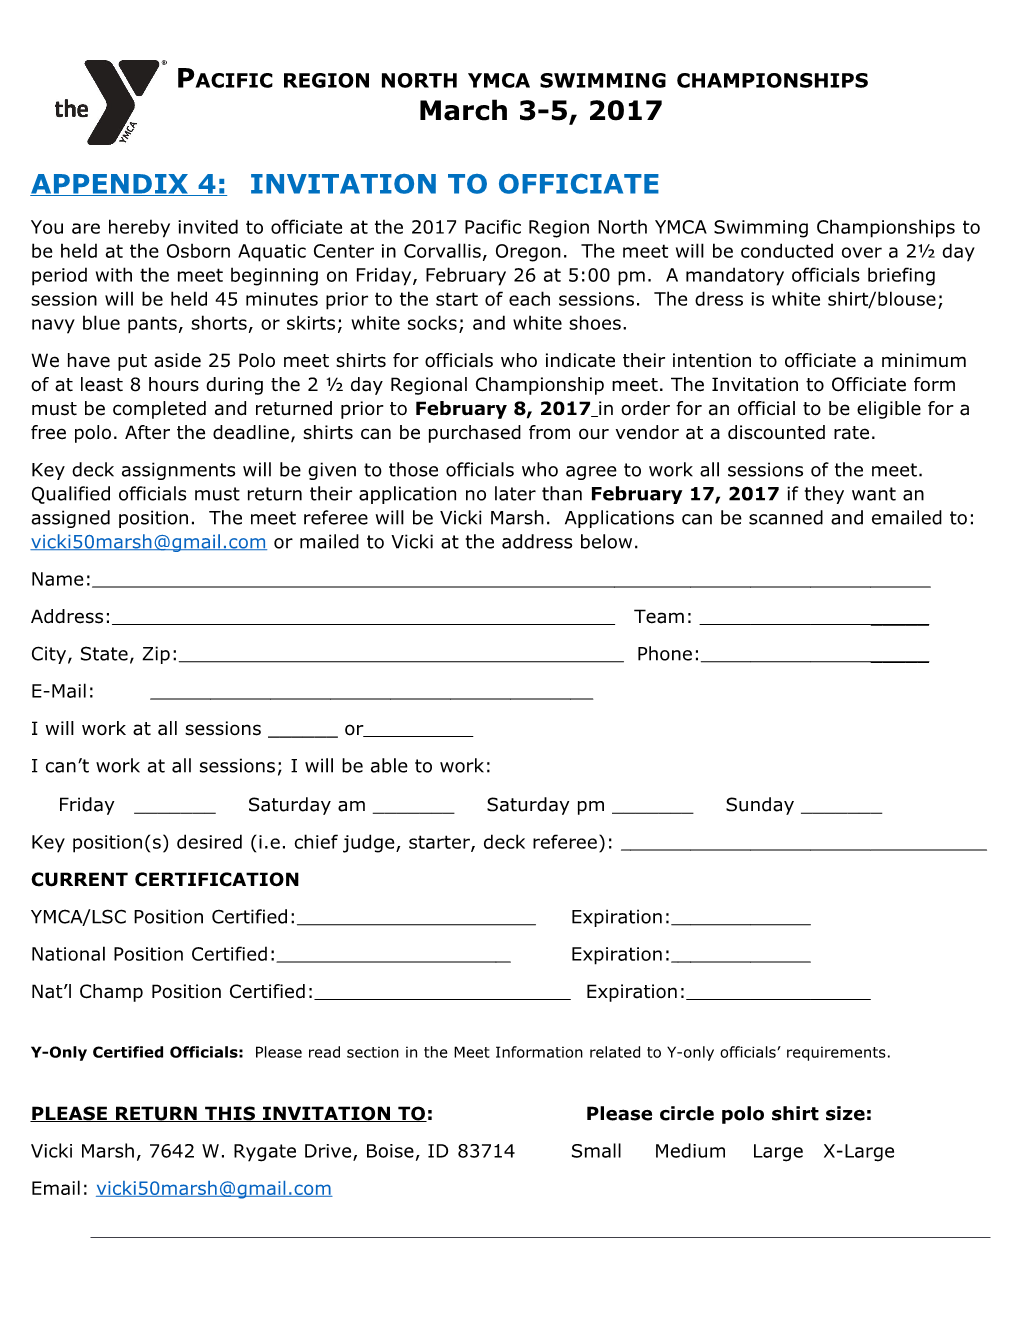 Appendix 4: Invitation to Officiate